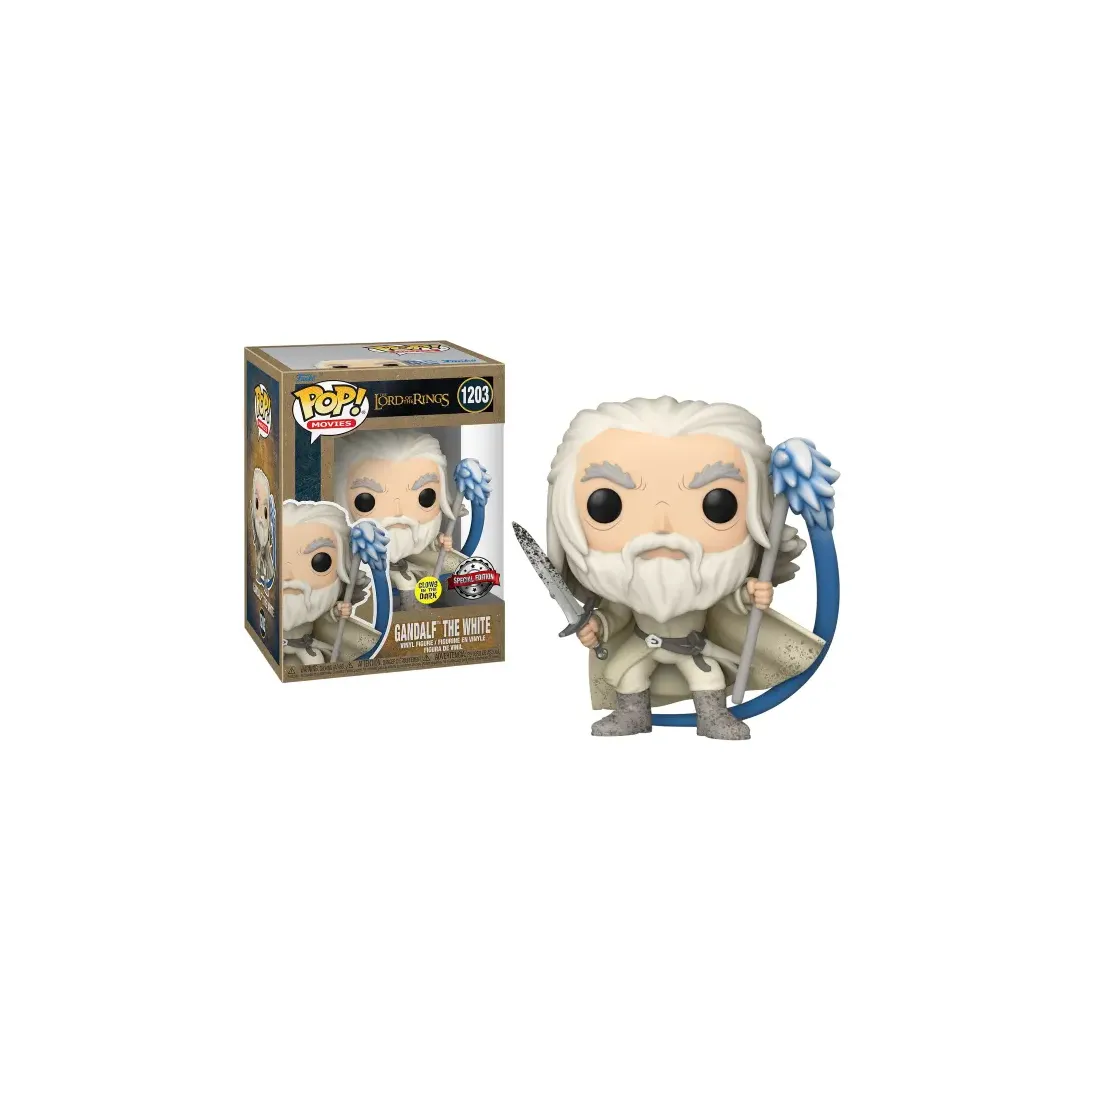 Figura POP El Señor de los Anillos Gandalf The White Exclusive